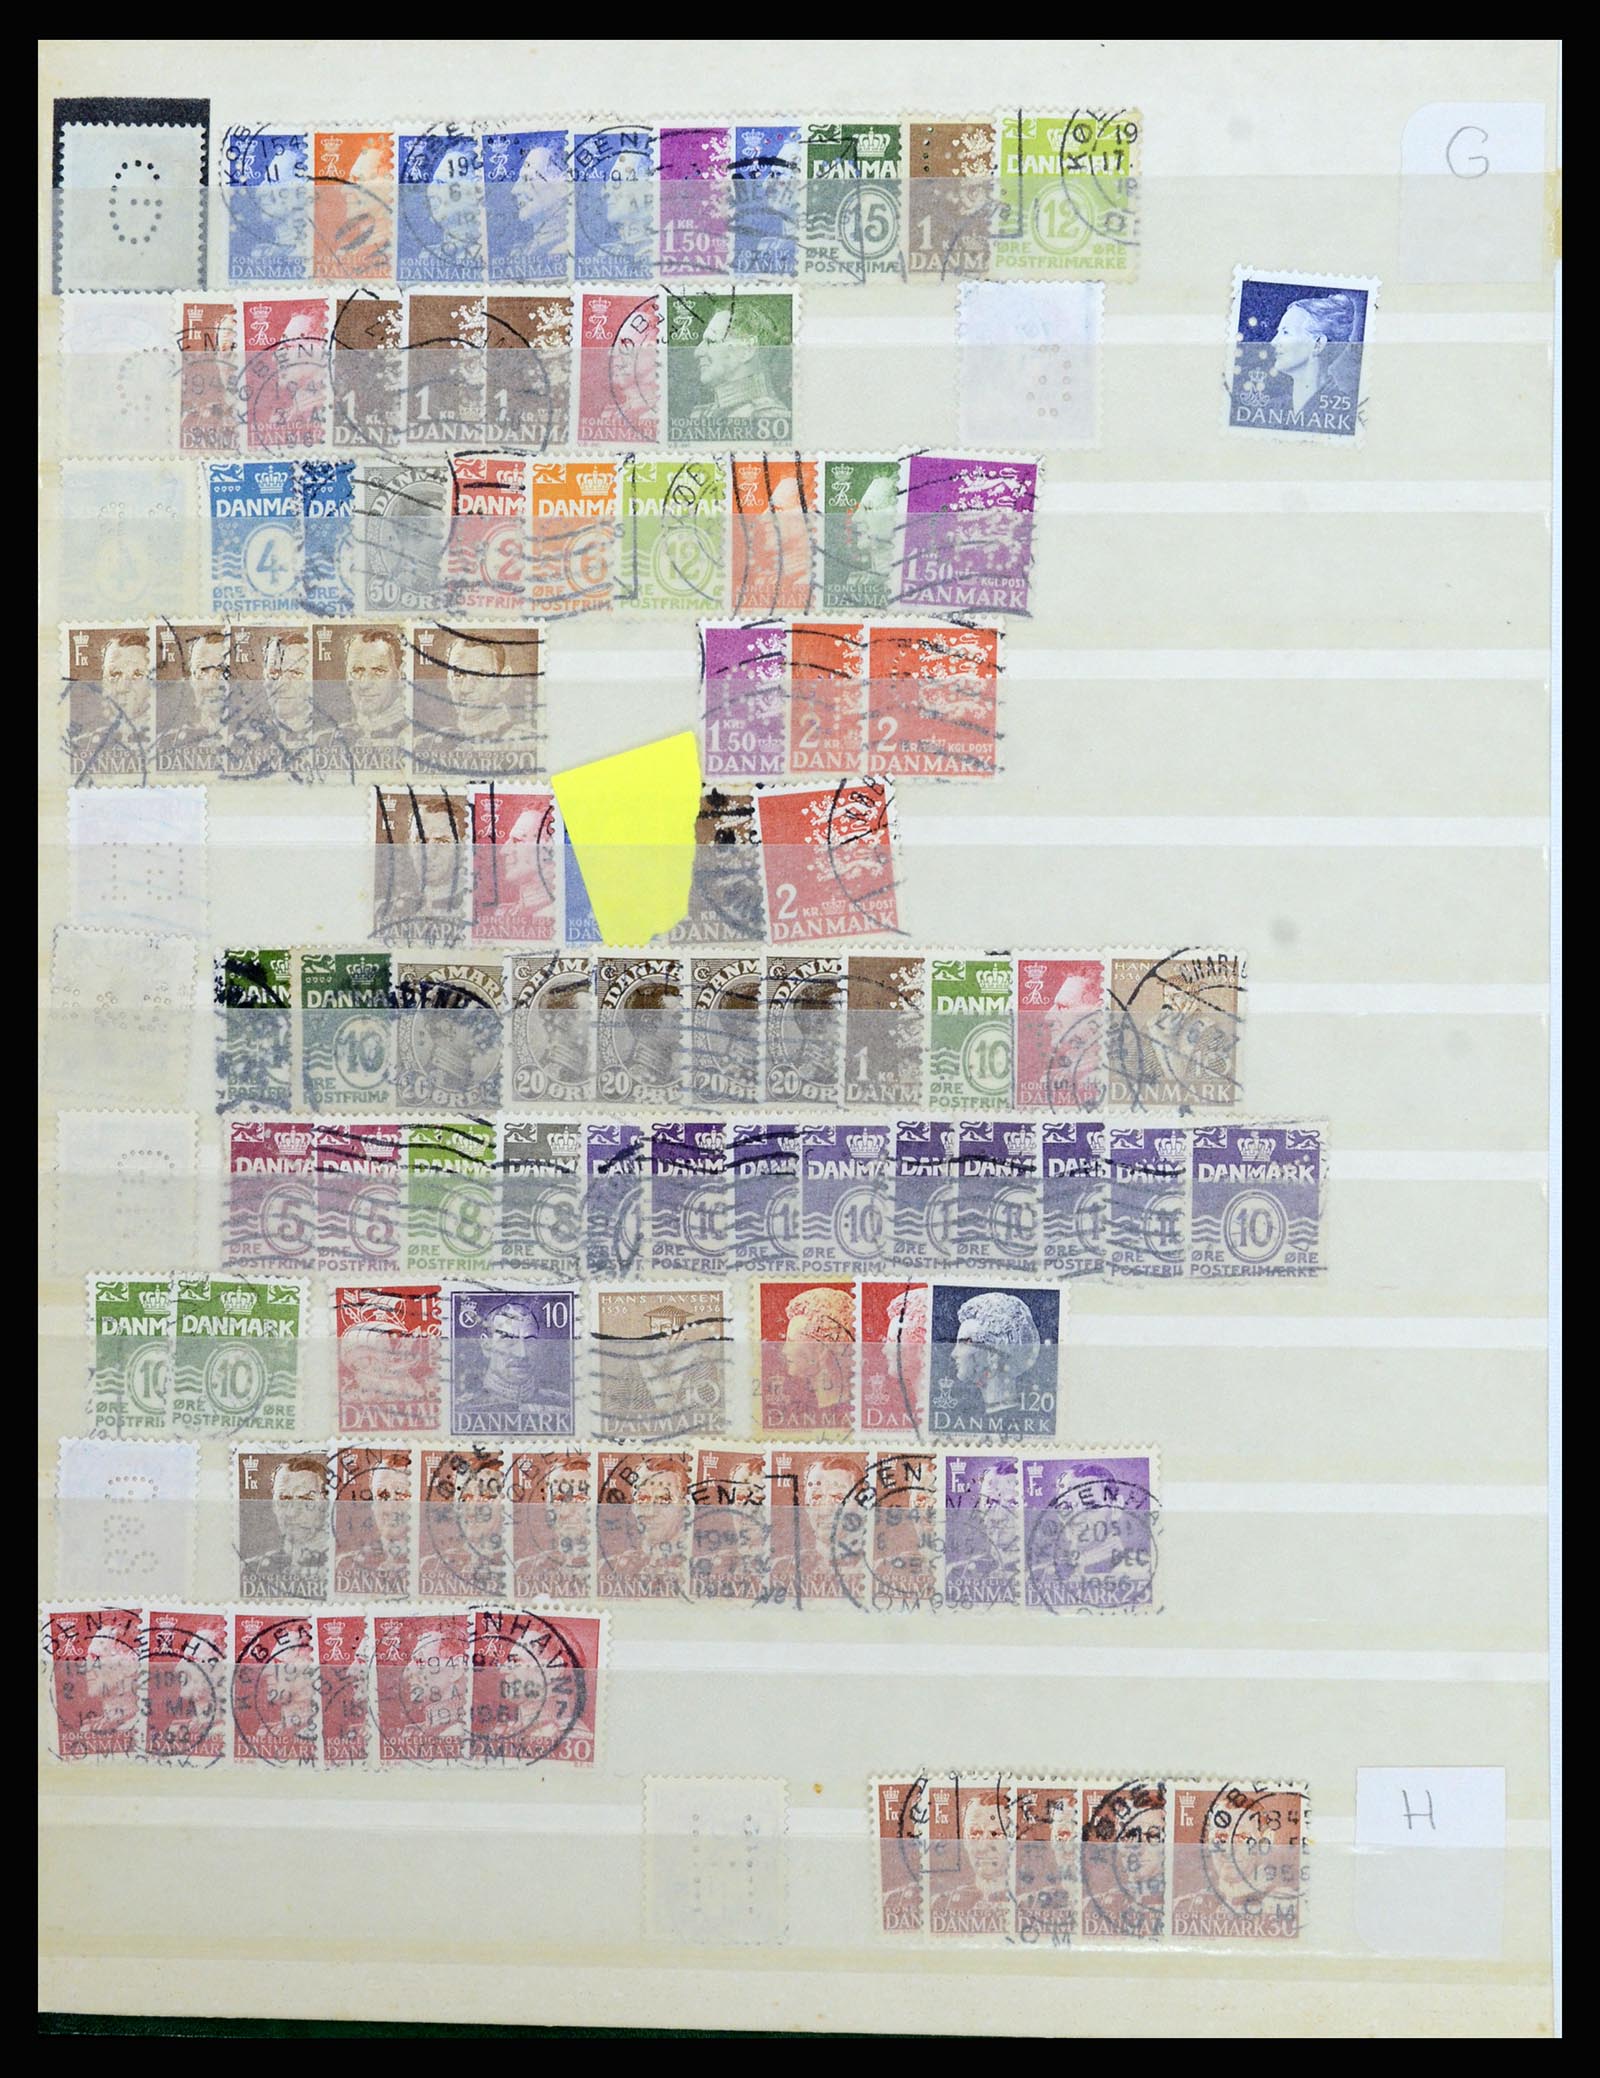 37056 074 - Postzegelverzameling 37056 Denemarken perfins.